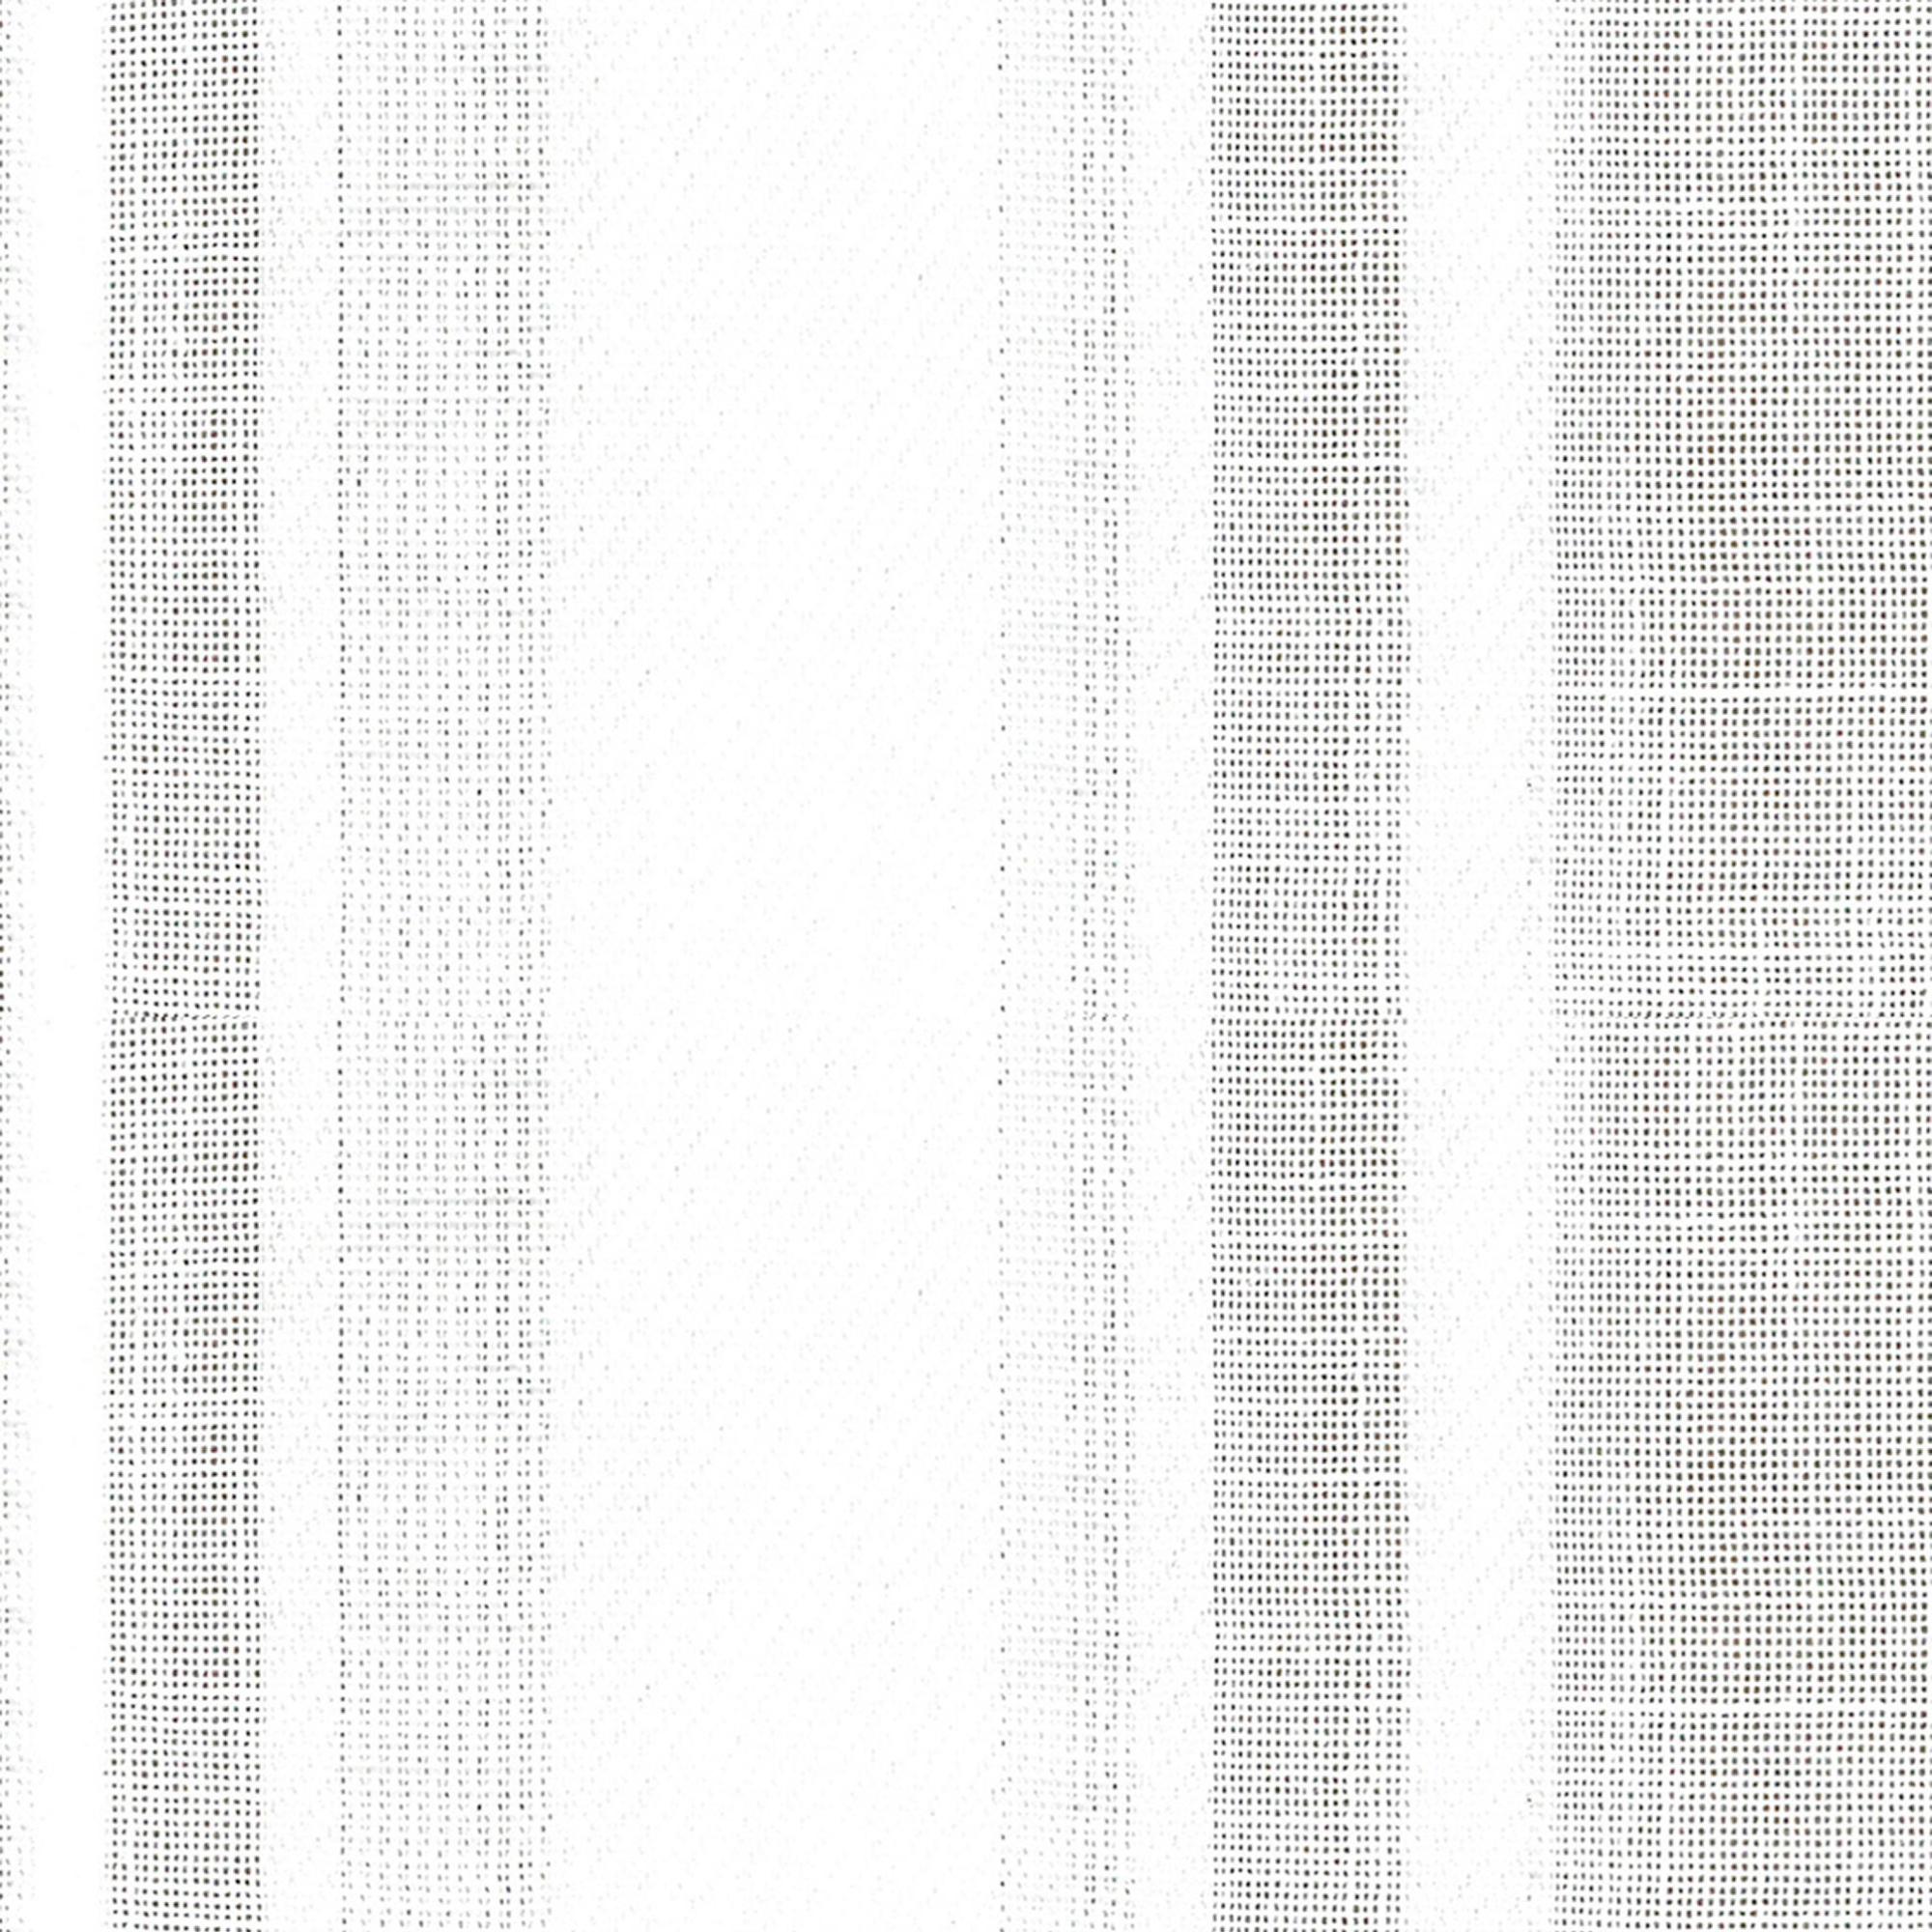 Visillo al corte fil coupé shajor blanco ancho 310 cm